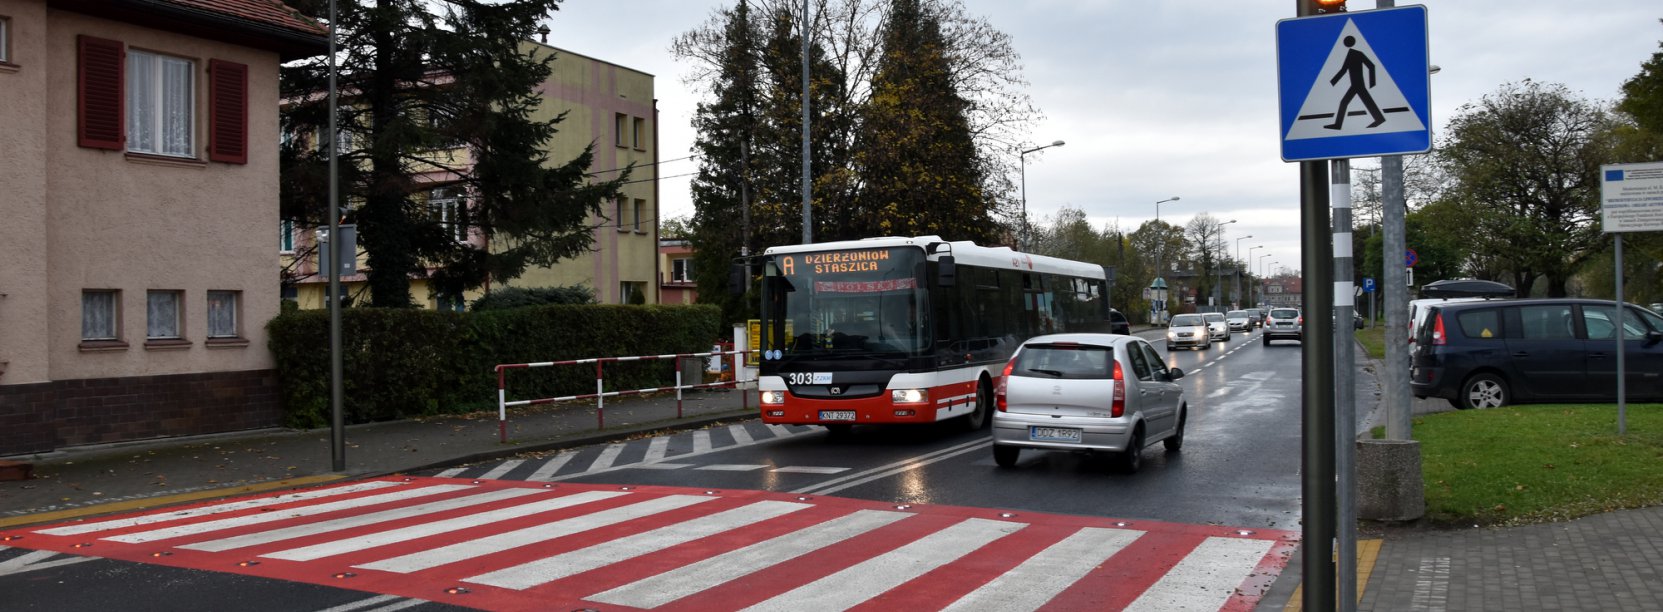 Przejśćie dla pieszych, autobus i auto stojące przed przejściem 